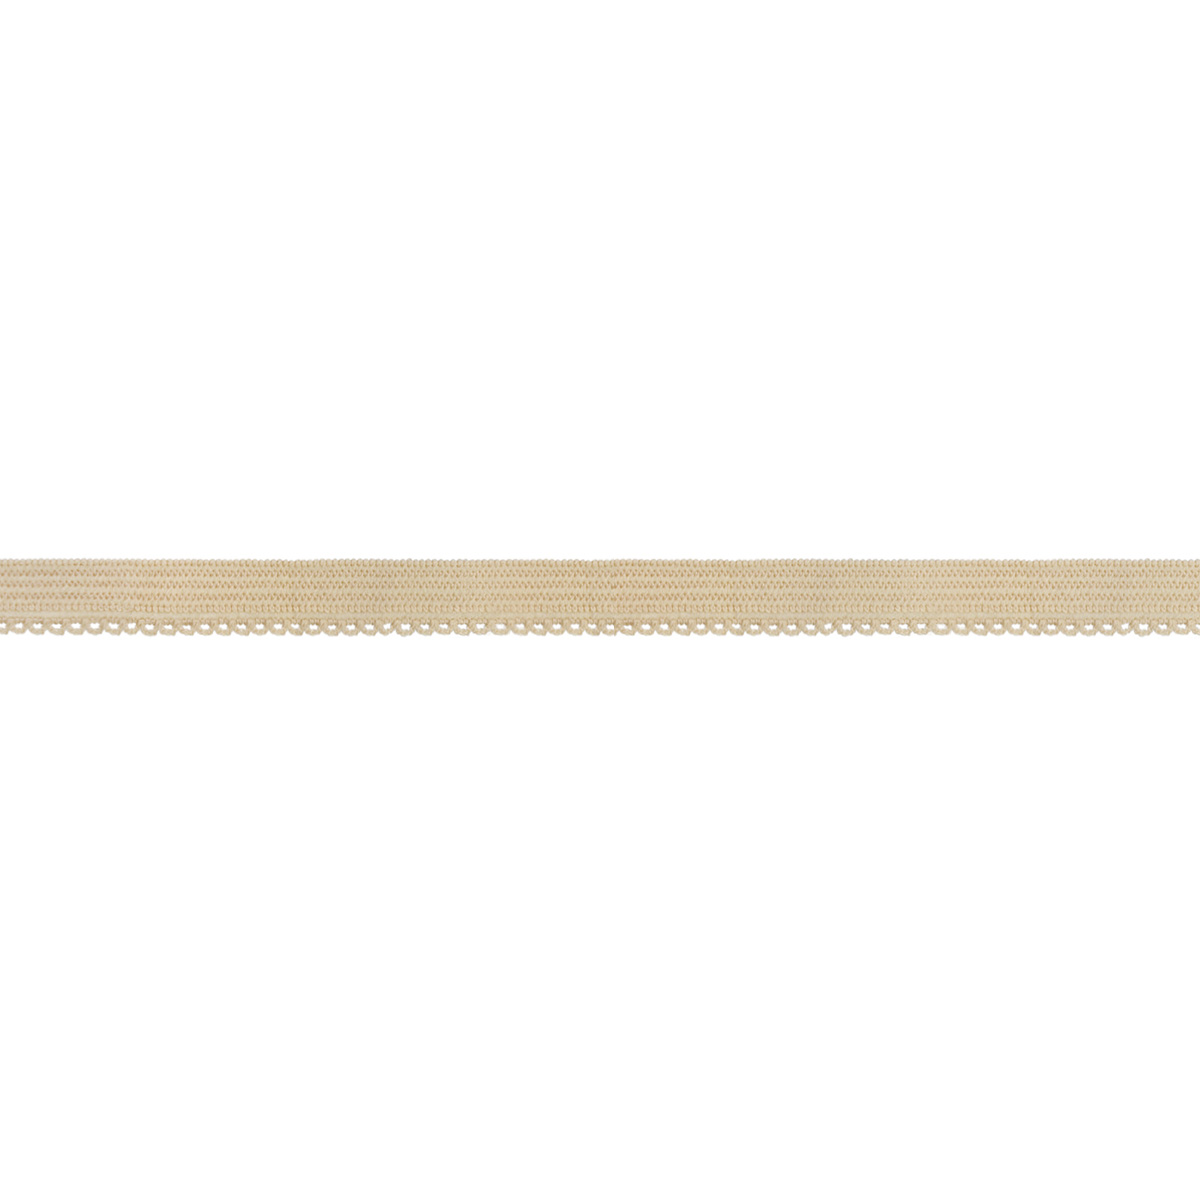 Резинка ажурная для нижнего белья с лайкрой арт. 9122-010N шир. 10 мм бежевая (уп. 50 м)